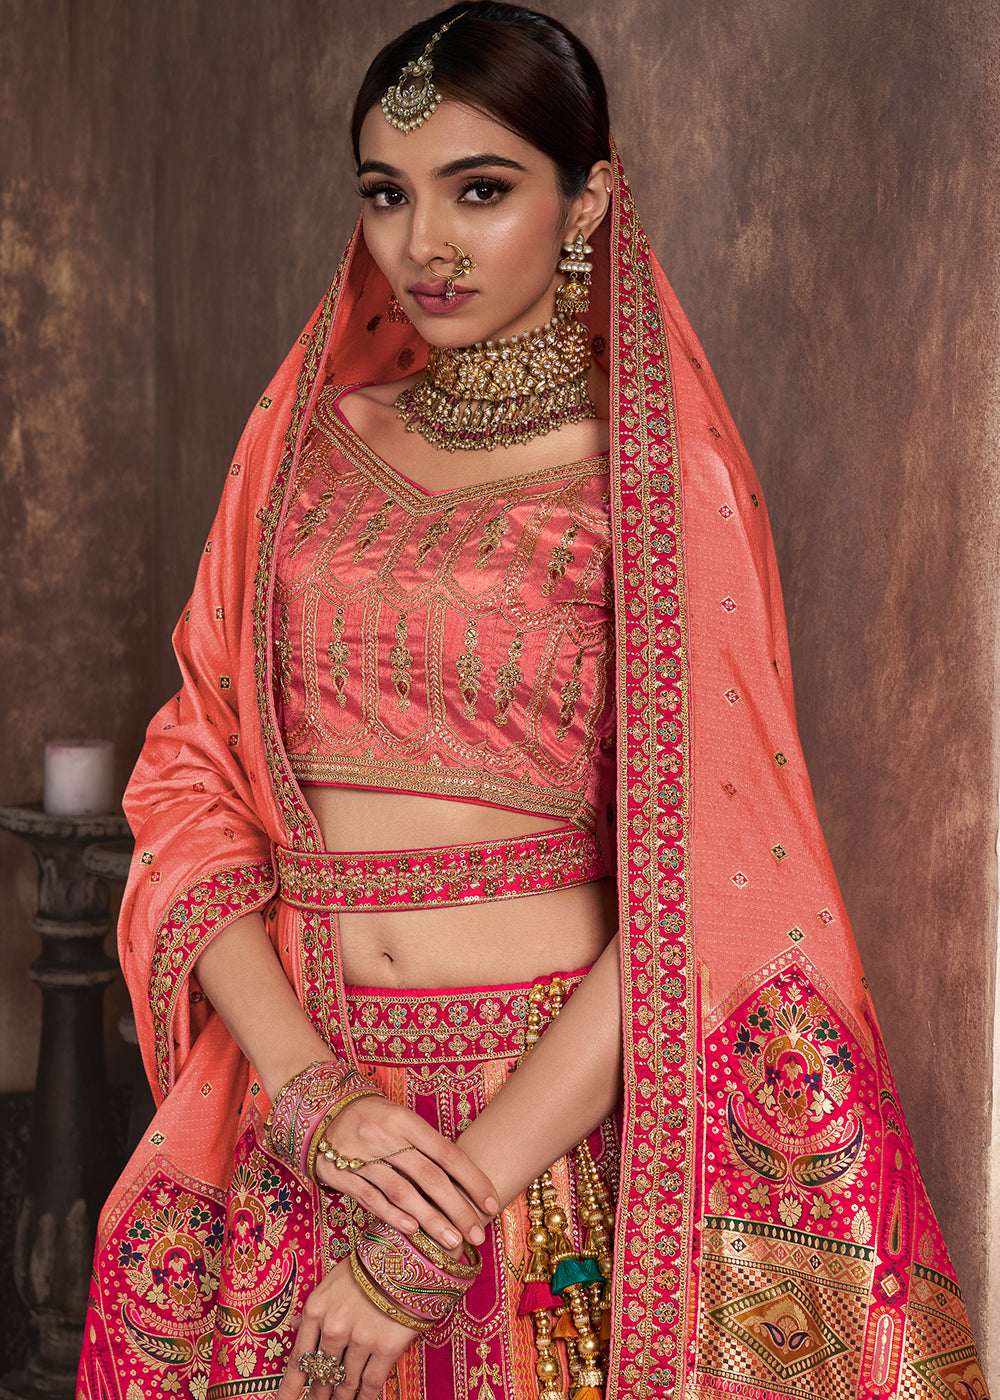 Buy Now Peach & Pink Banarasi Silk Bridal Designer Lehenga Choli Online in USA, UK, Canada & Worldwide at Empress Clothing.